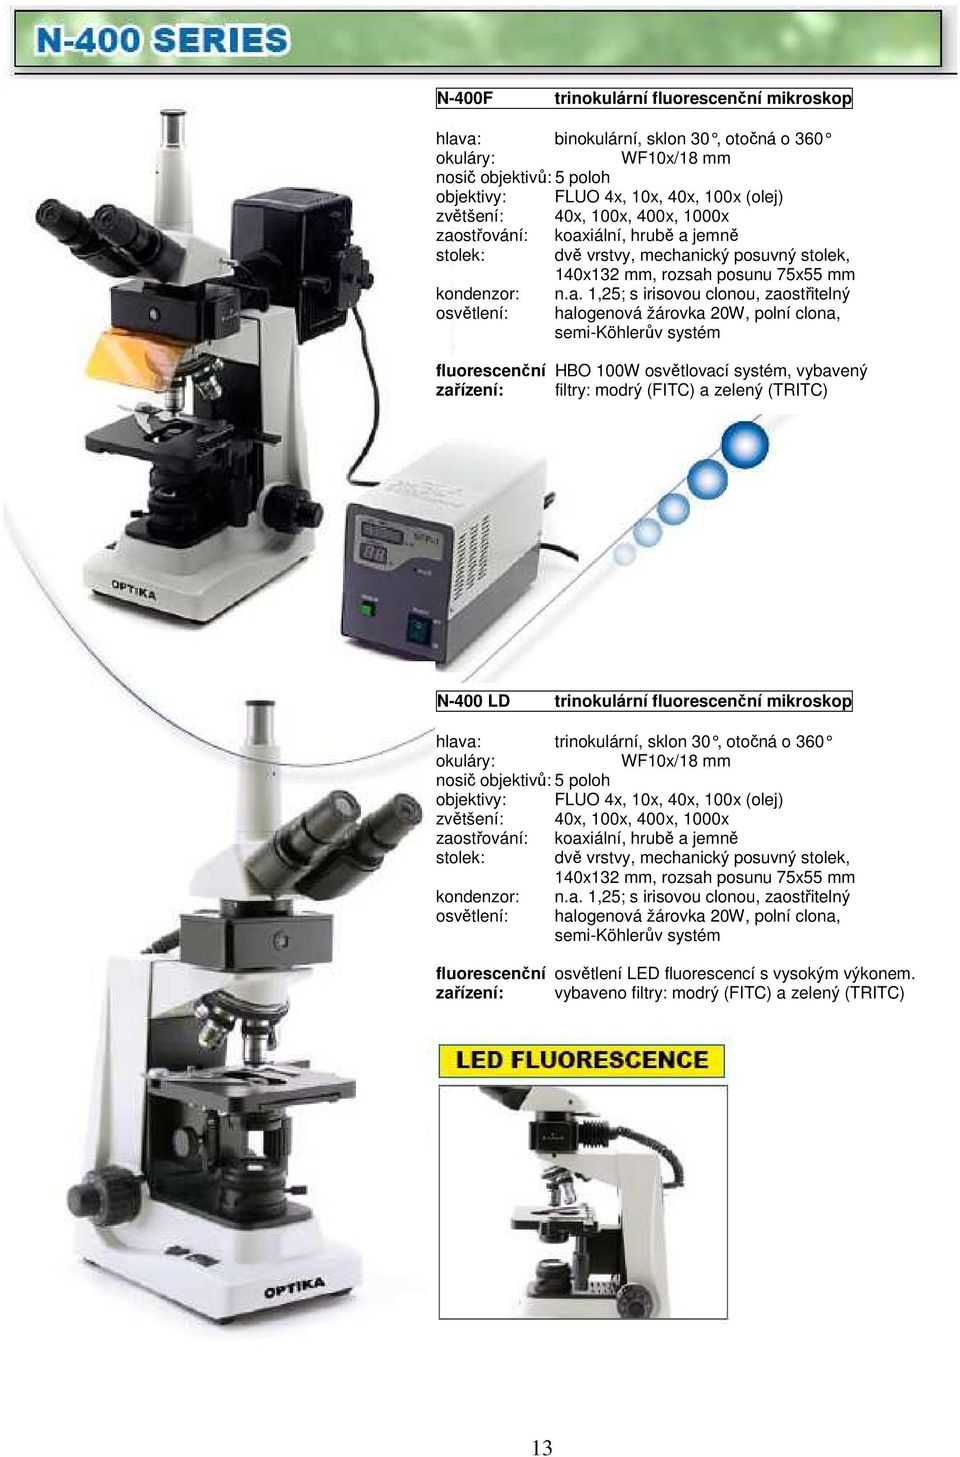 žárovka 20W, polní clona, semi-köhlerův systém fluorescenční HBO 100W osvětlovací systém, vybavený zařízení: filtry: modrý (FITC) a zelený (TRITC) N-400 LD trinokulární fluorescenční mikroskop hlava: